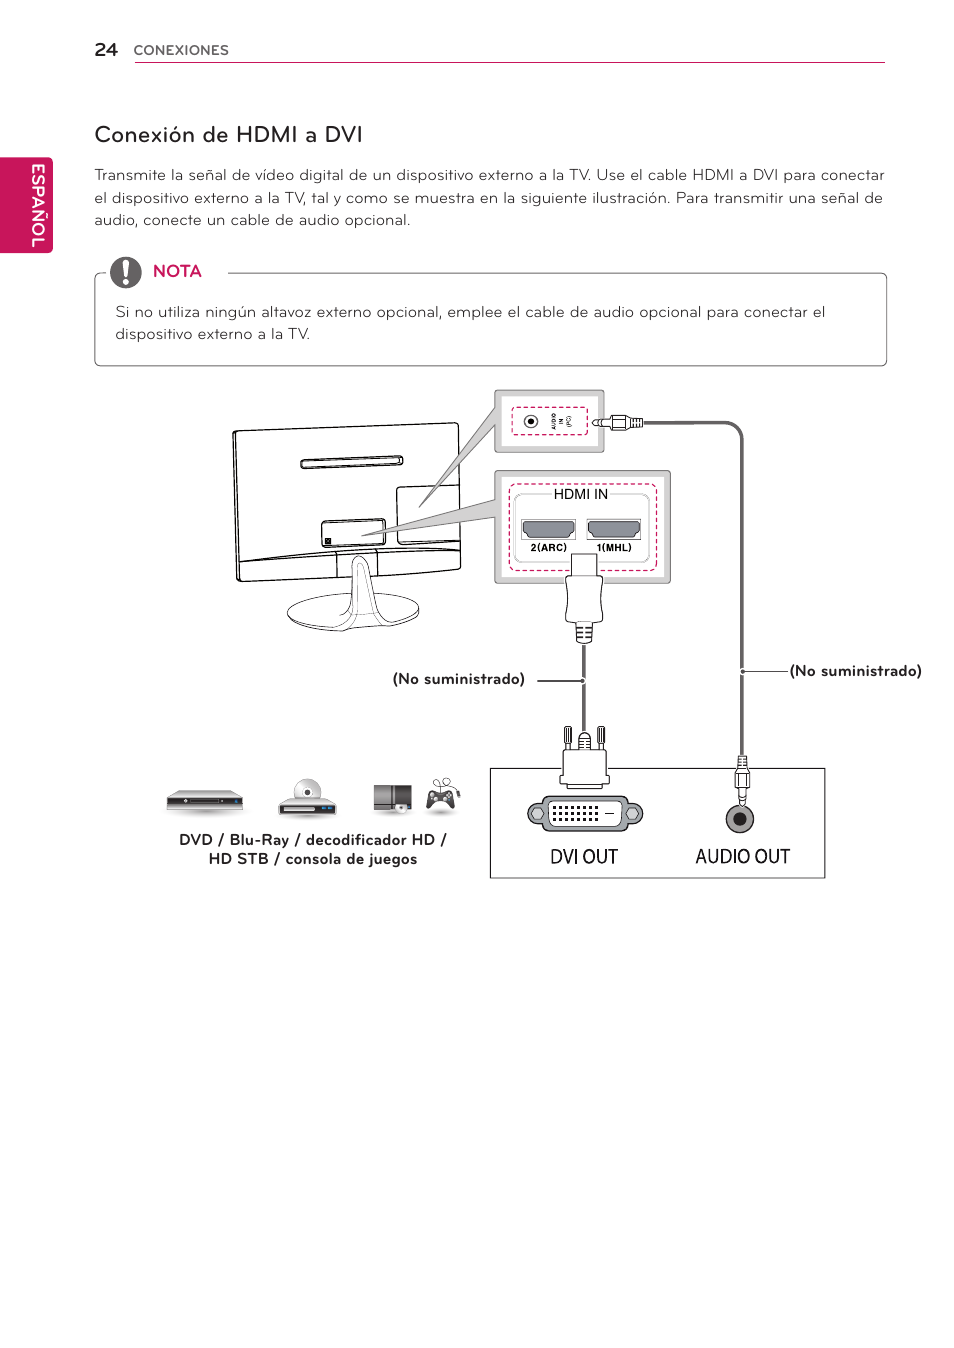 Conexión de hdmi a dvi | LG 24MS53S-PZ Manual del usuario | Página 24 / 46